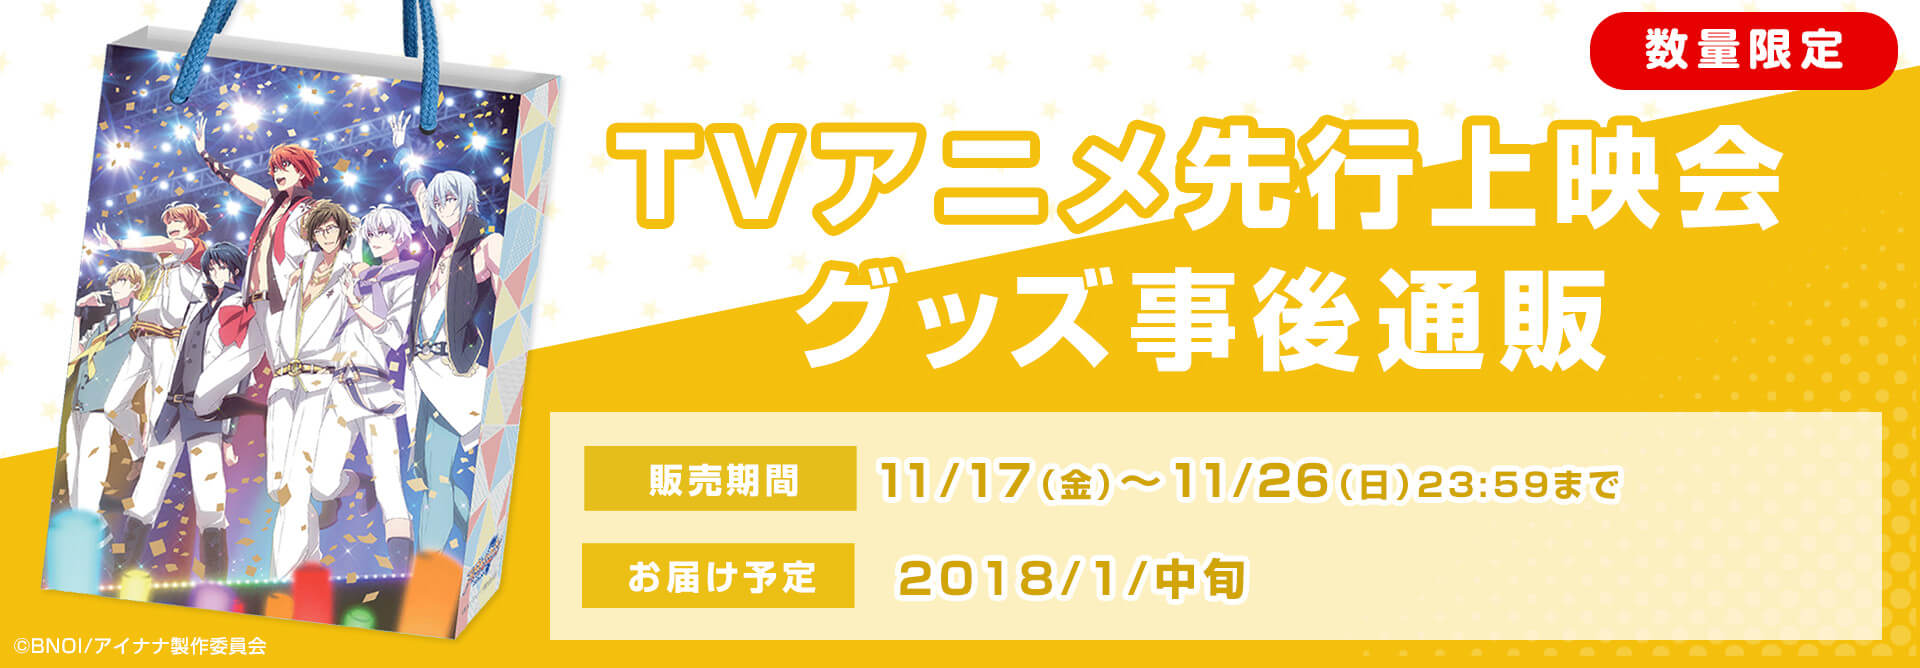 11/2開催「TVアニメ先行上映会」グッズを数量限定で販売！先行上映会グッズ事後通販。受注期間は11月17(金)から11月26(日)23時59分まで、お届け予定は2018年1月中旬